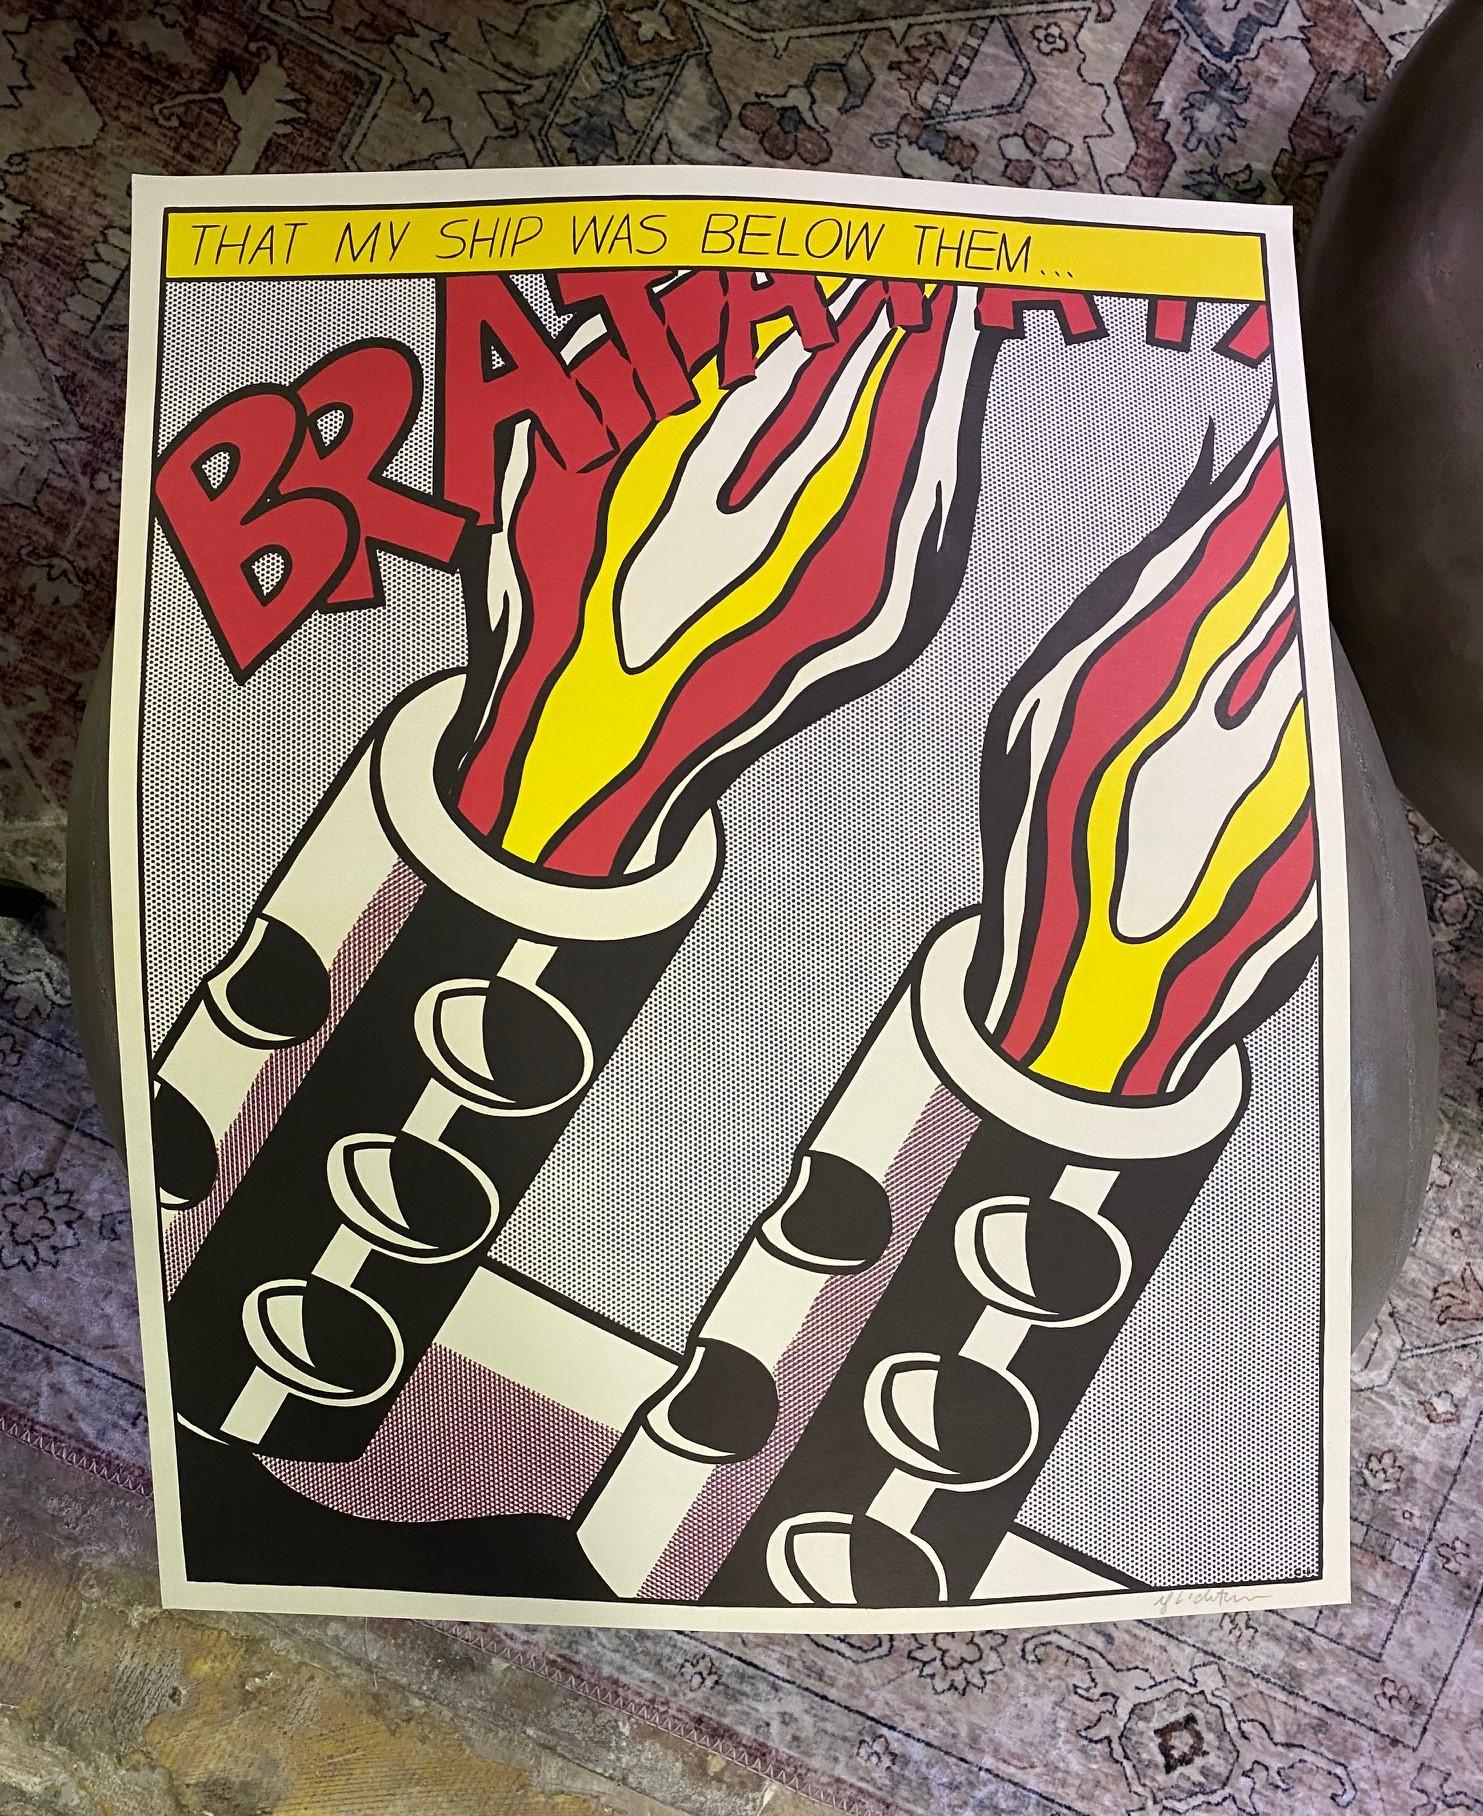 Roy Lichtenstein Hand Signed Triptych Print 